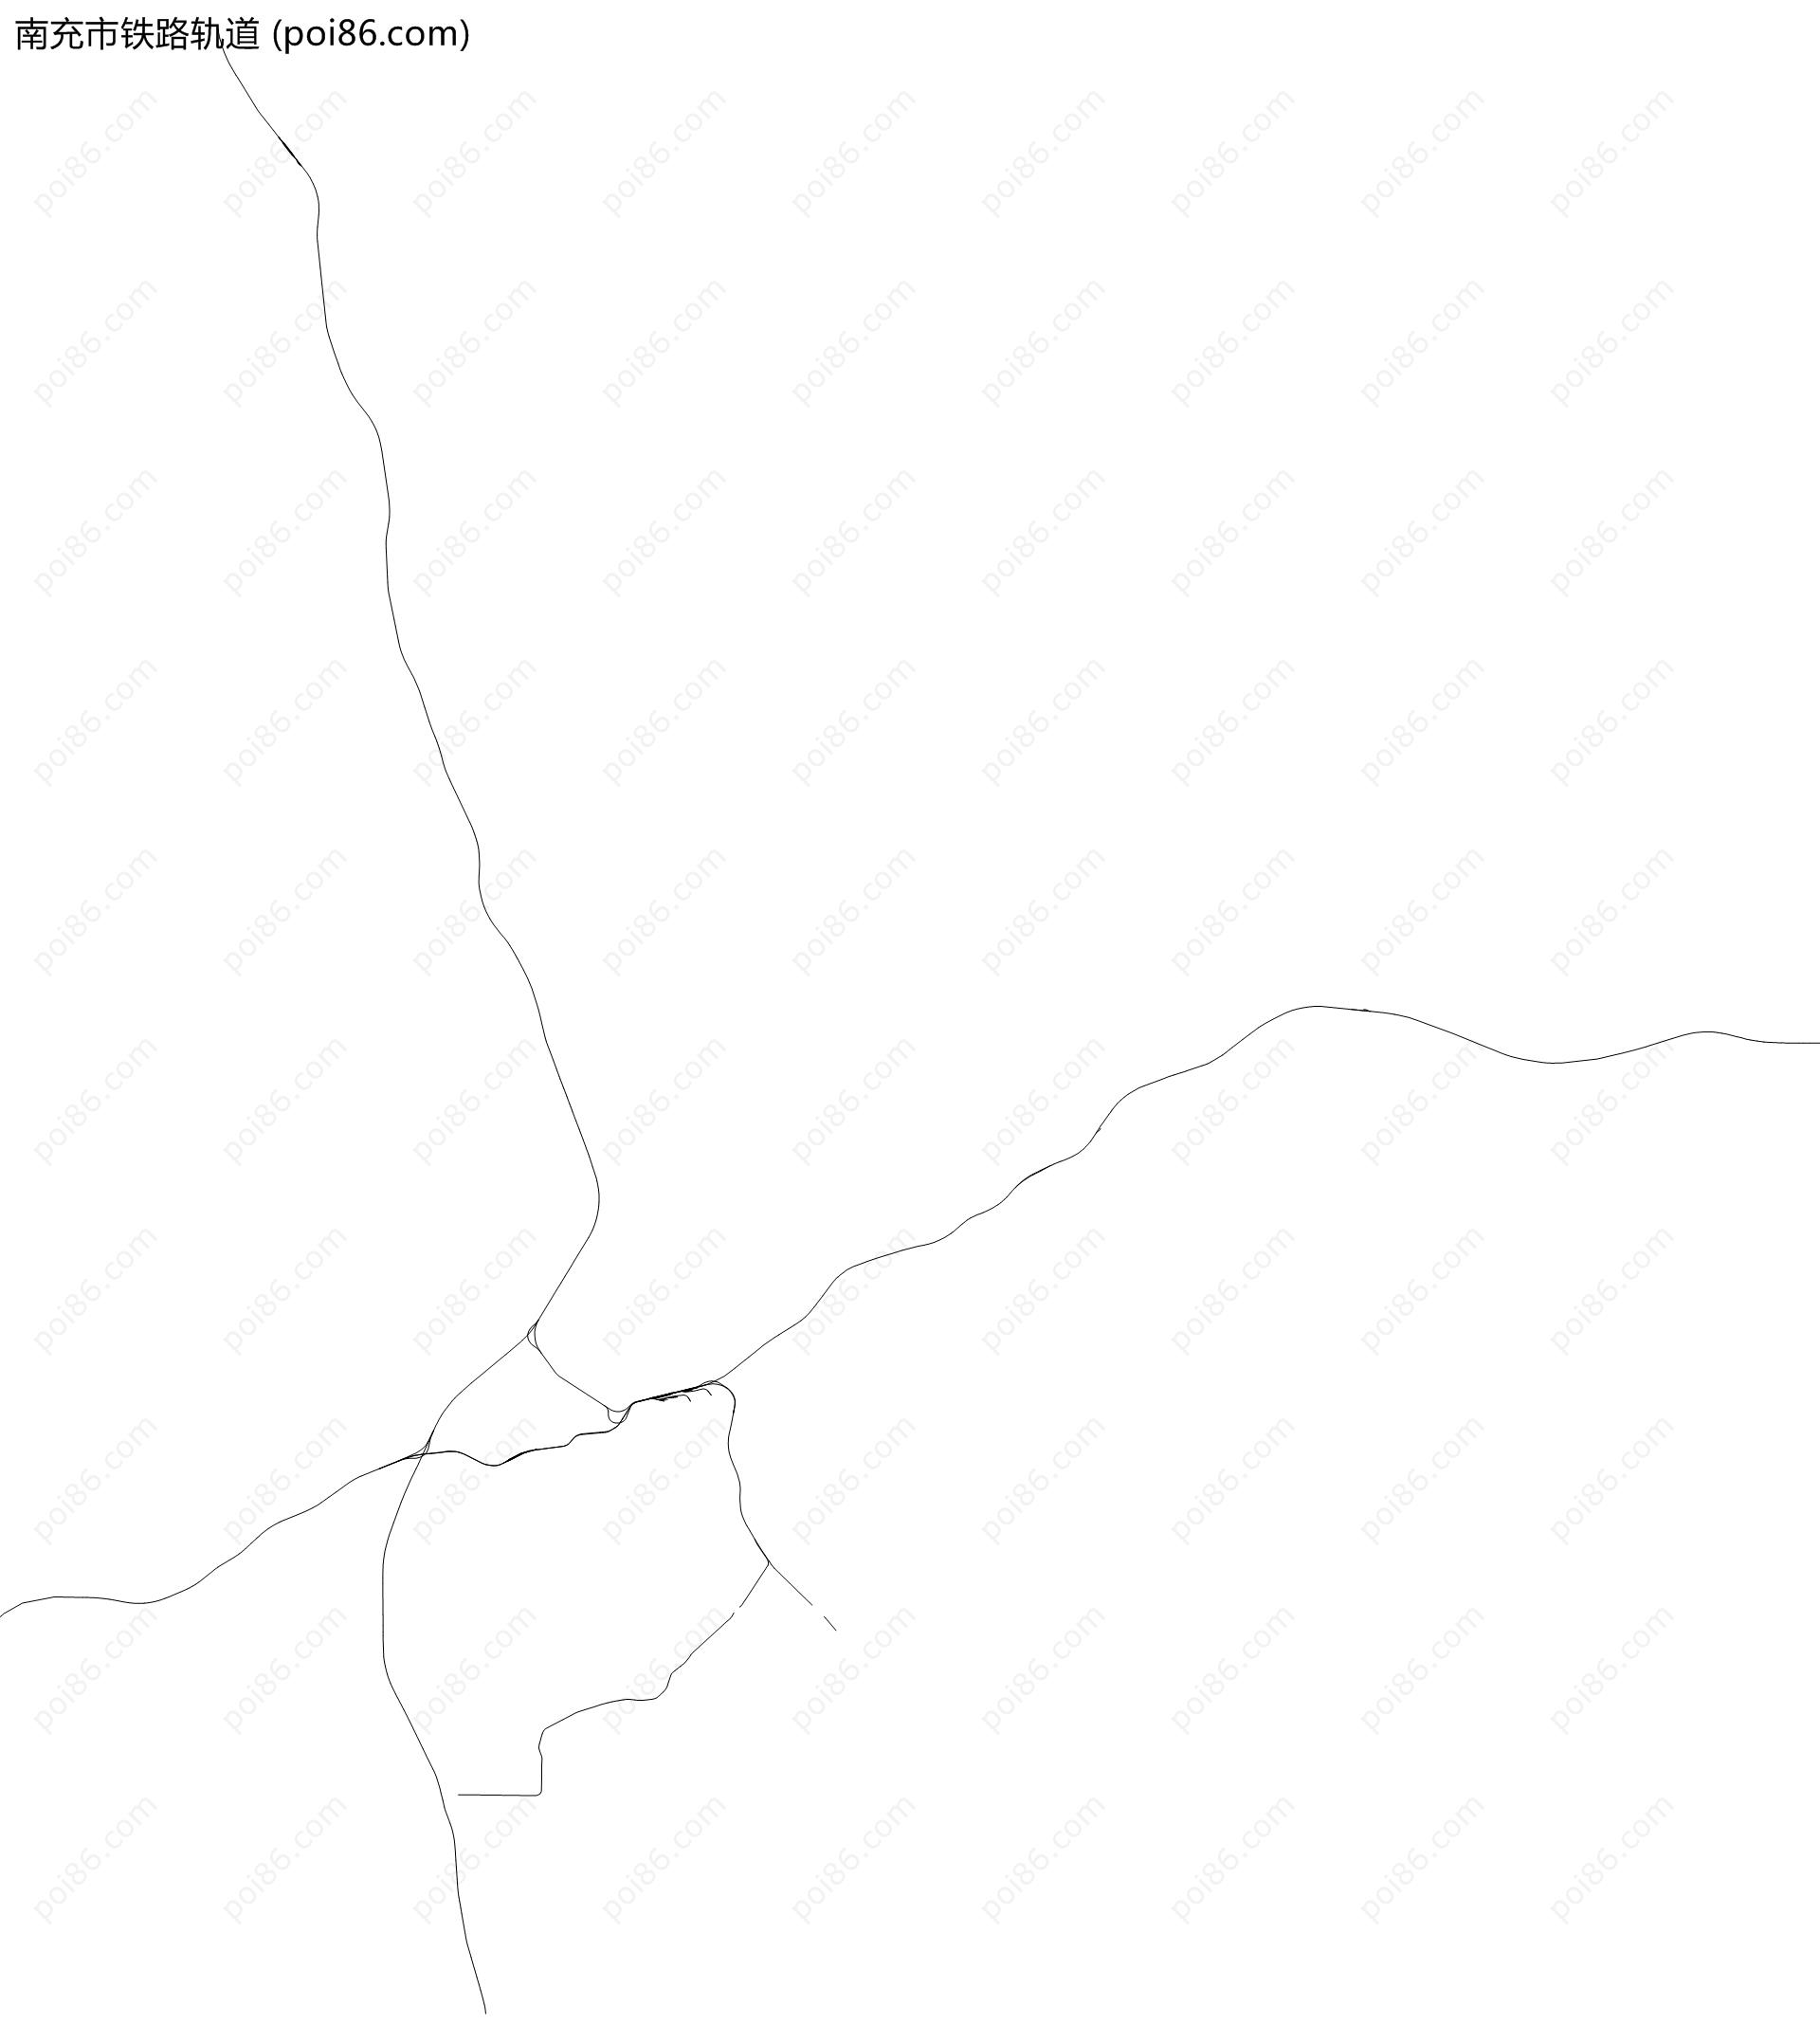 南充市铁路轨道地图